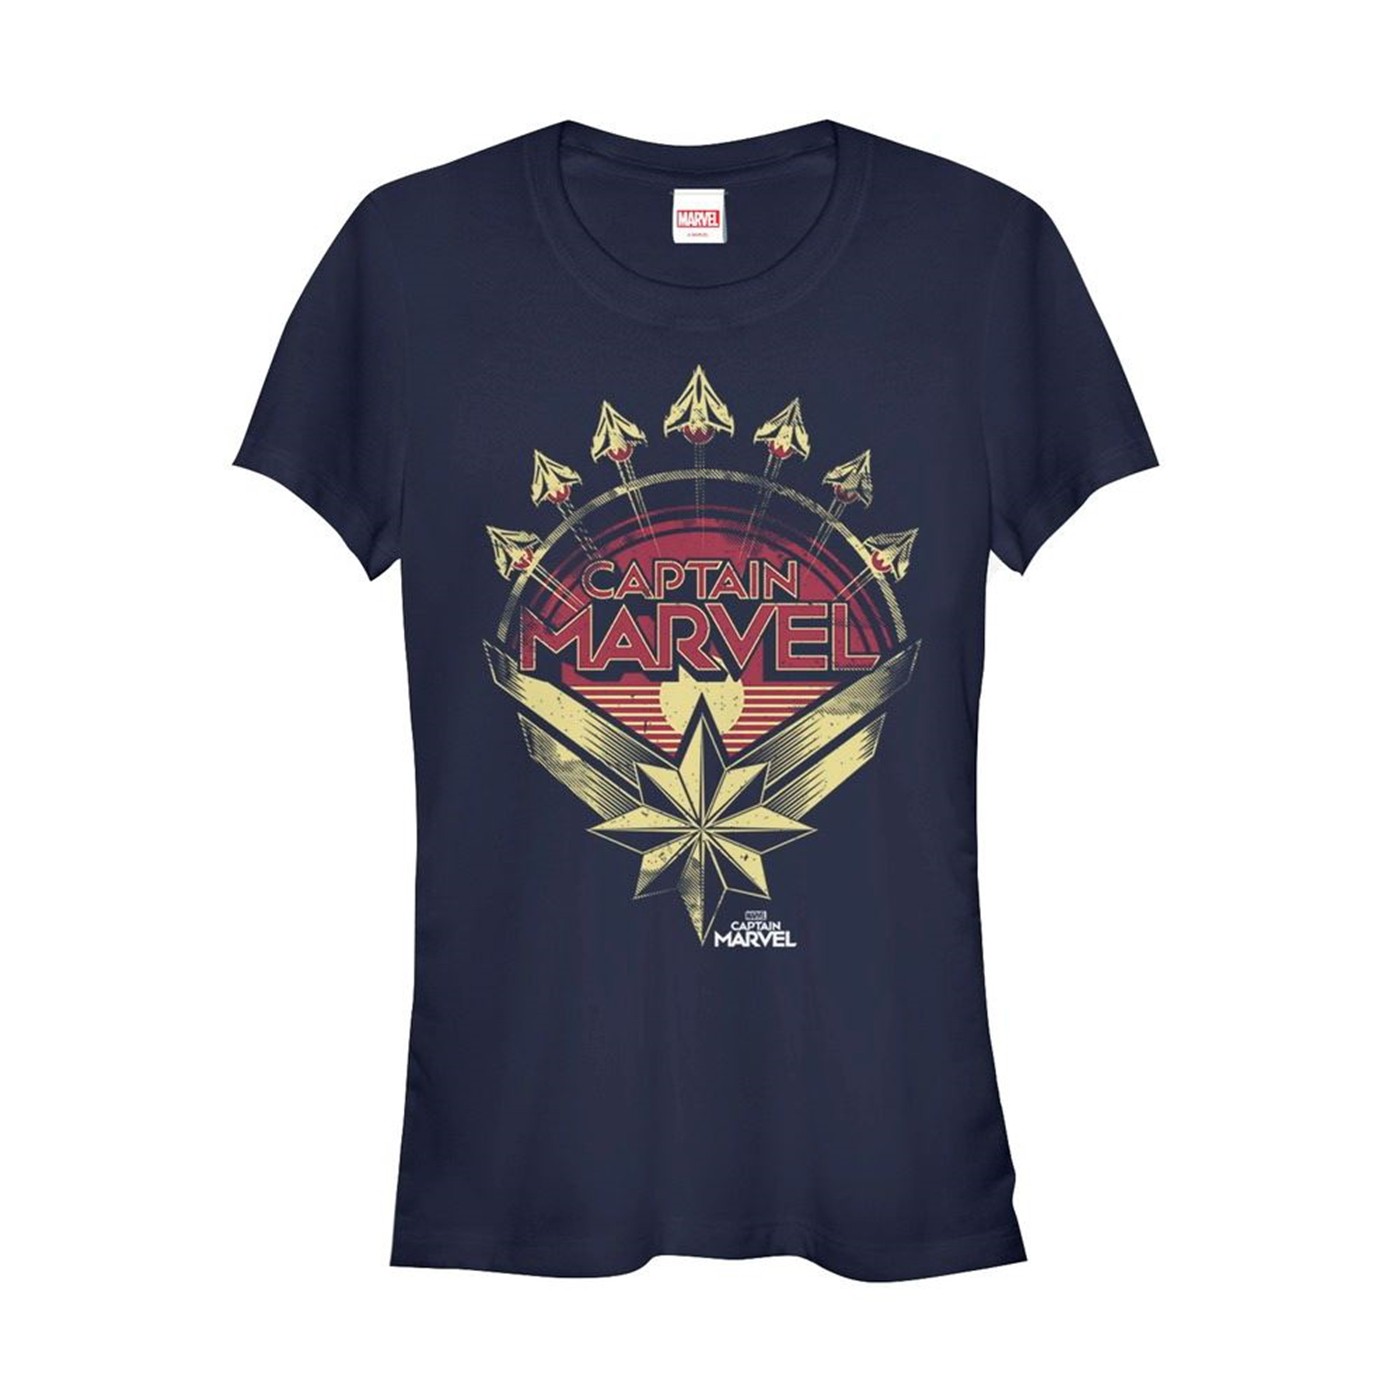 Captain Marvel Retro Fighter Jet Plane Women's T-Shirt